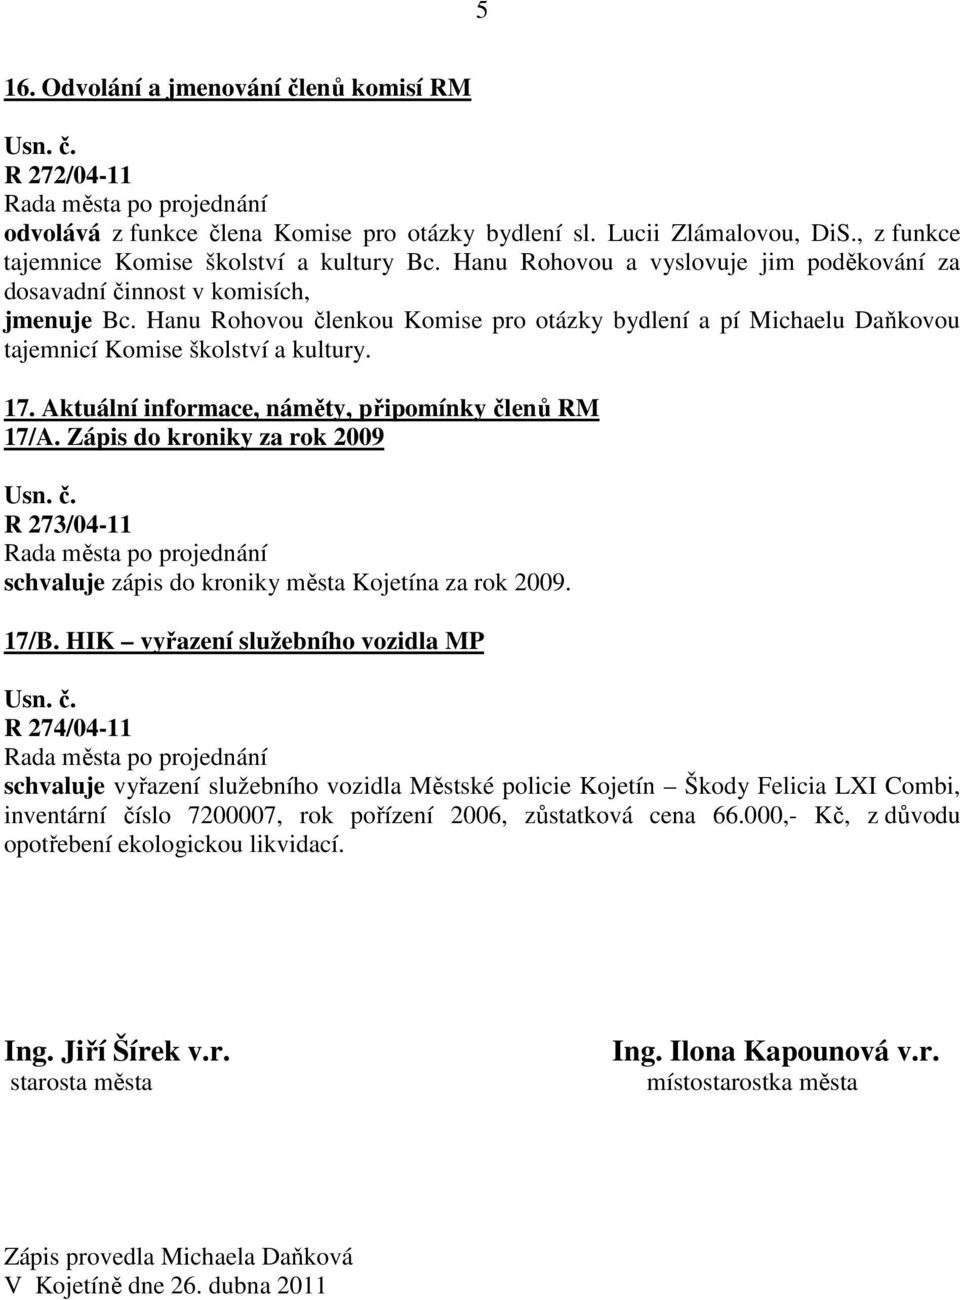 Aktuální informace, náměty, připomínky členů RM 17/A. Zápis do kroniky za rok 2009 R 273/04-11 schvaluje zápis do kroniky města Kojetína za rok 2009. 17/B.